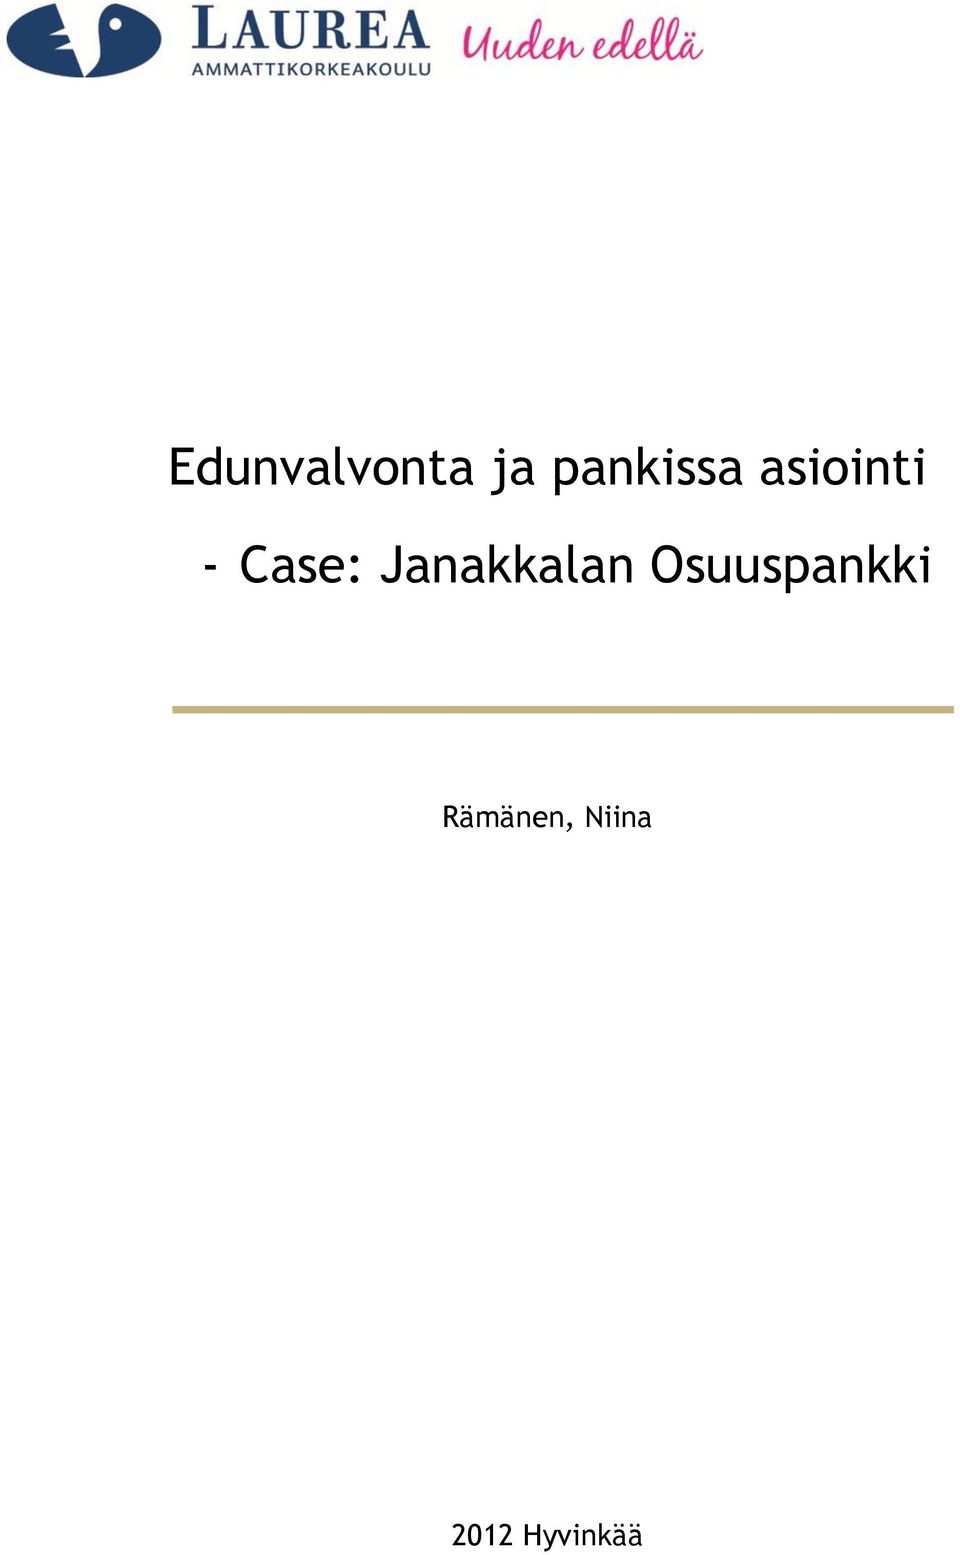 Case: Janakkalan